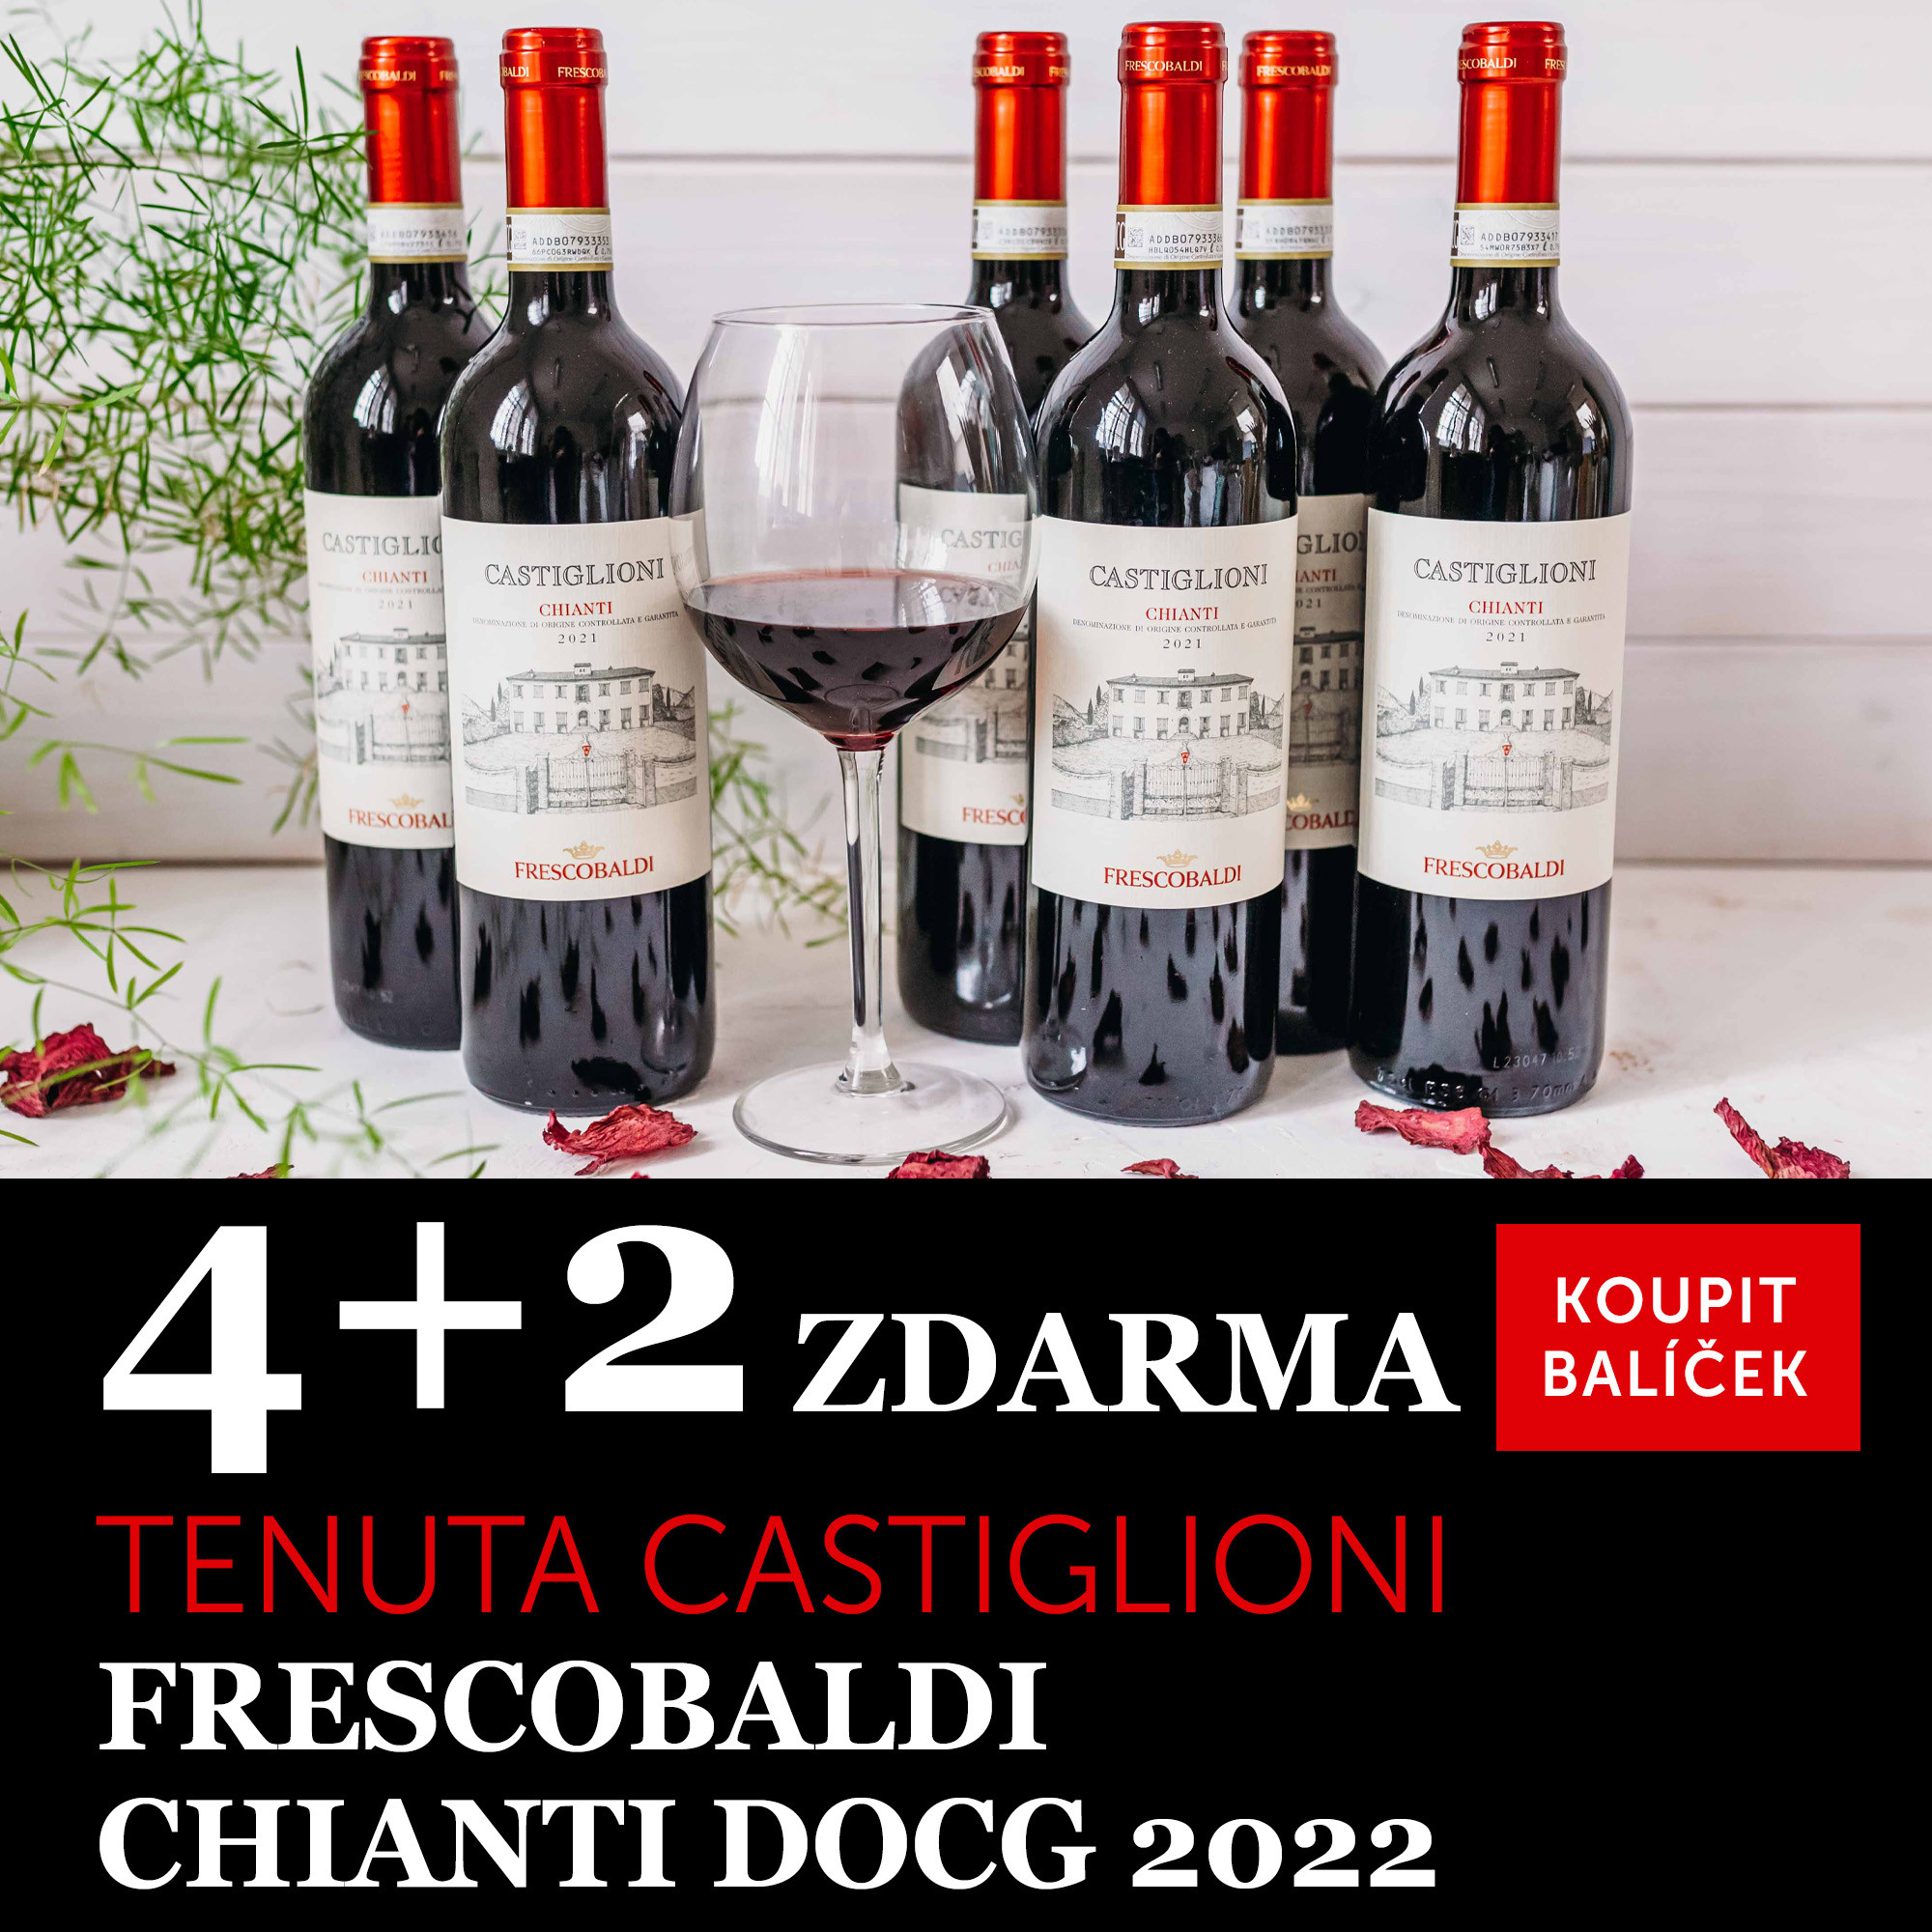 Víno měsíce října - Castiglioni Chianti DOCG 2022 4+2 zdarma - UKONČENO